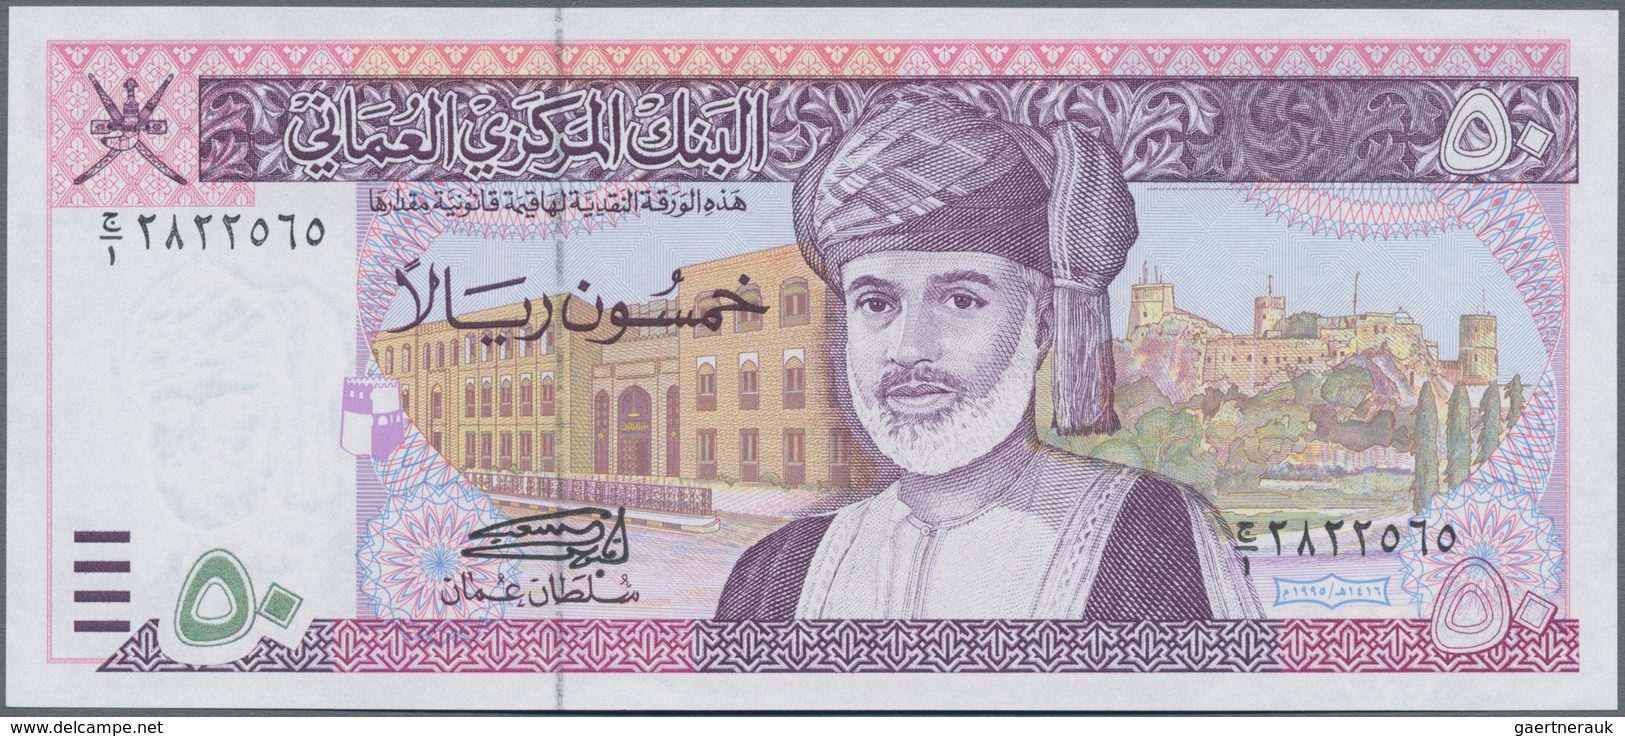 Oman: Central Bank Of Oman 50 Rials 1995, P.38 In Perfect UNC Condition. - Oman